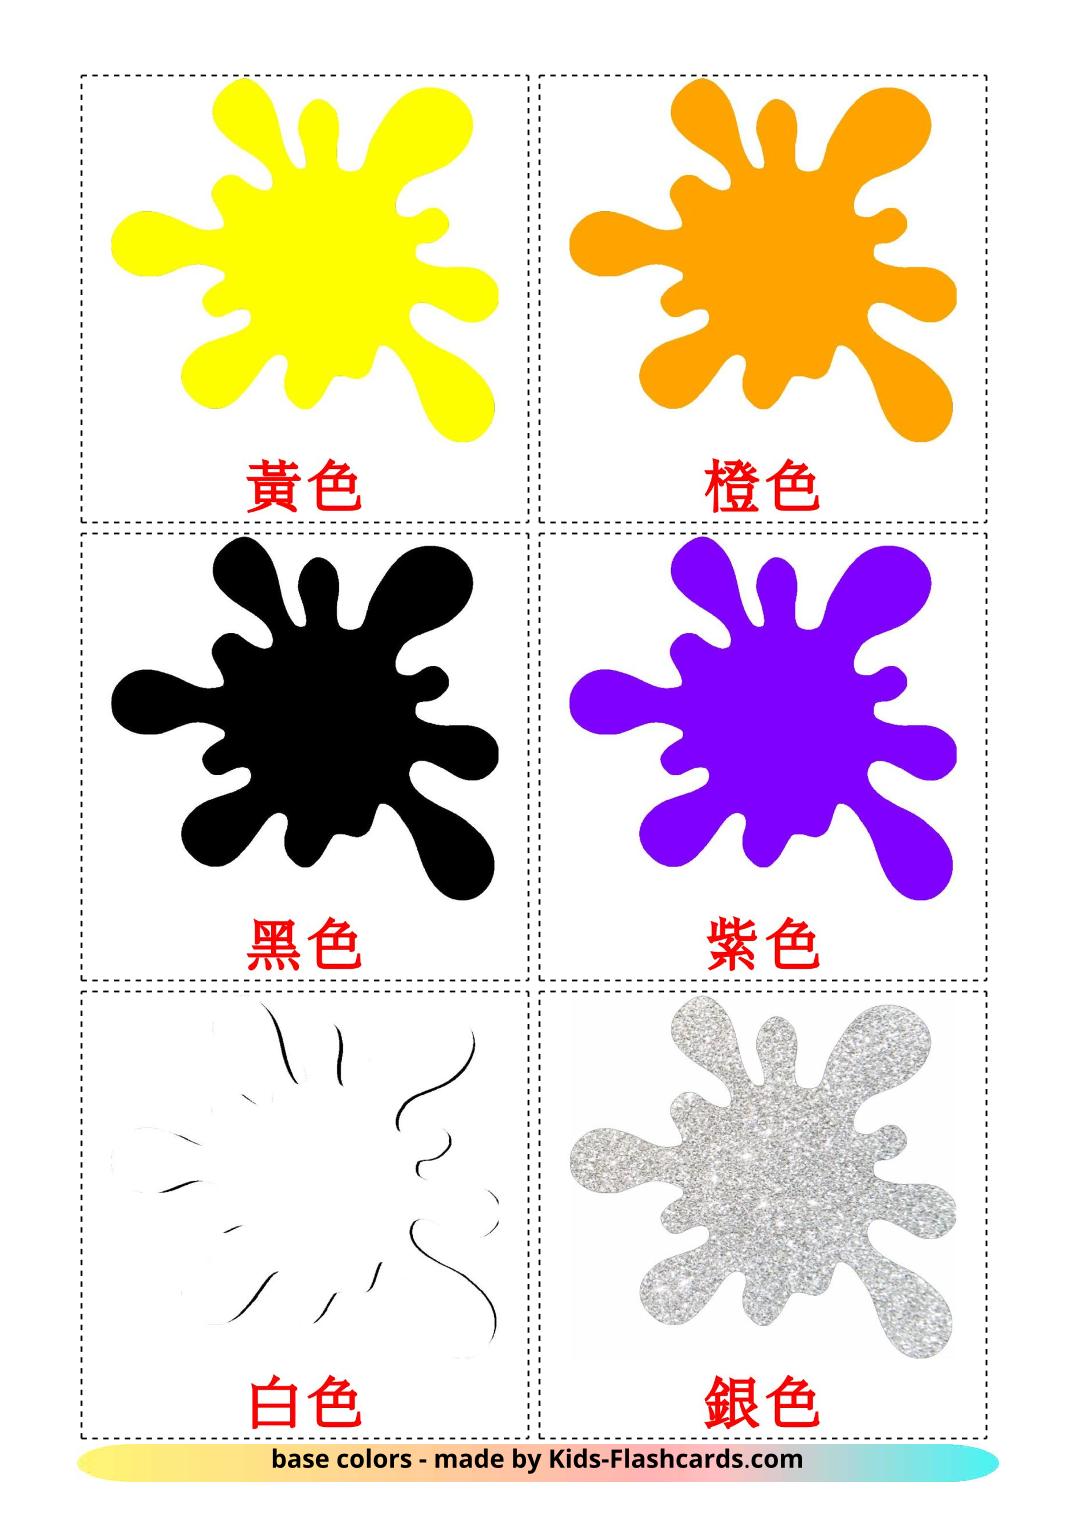 Farben - 12 kostenlose, druckbare Chinesisch(Traditionell) Flashcards 